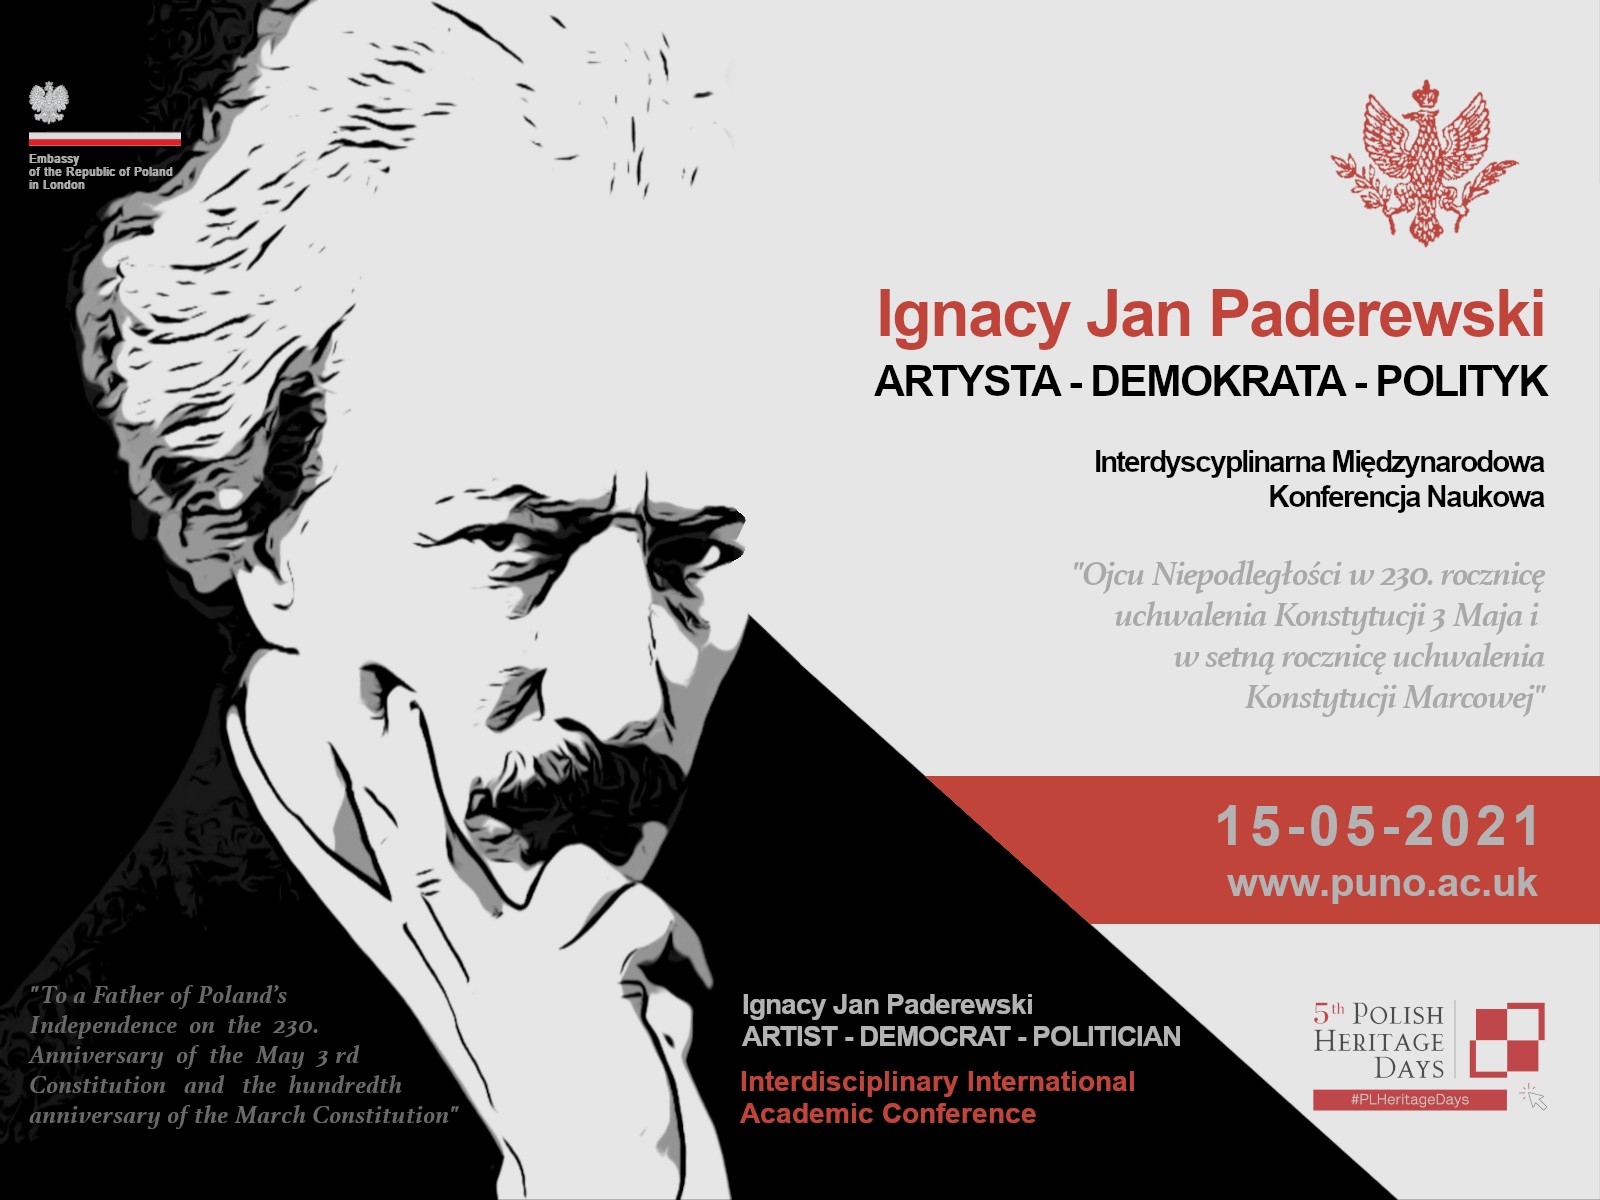 Interdyscyplinarna Międzynarodowa Konferencja Naukowa „Ignacy Jan Paderewski. Artysta, Demokrata, Polityk”